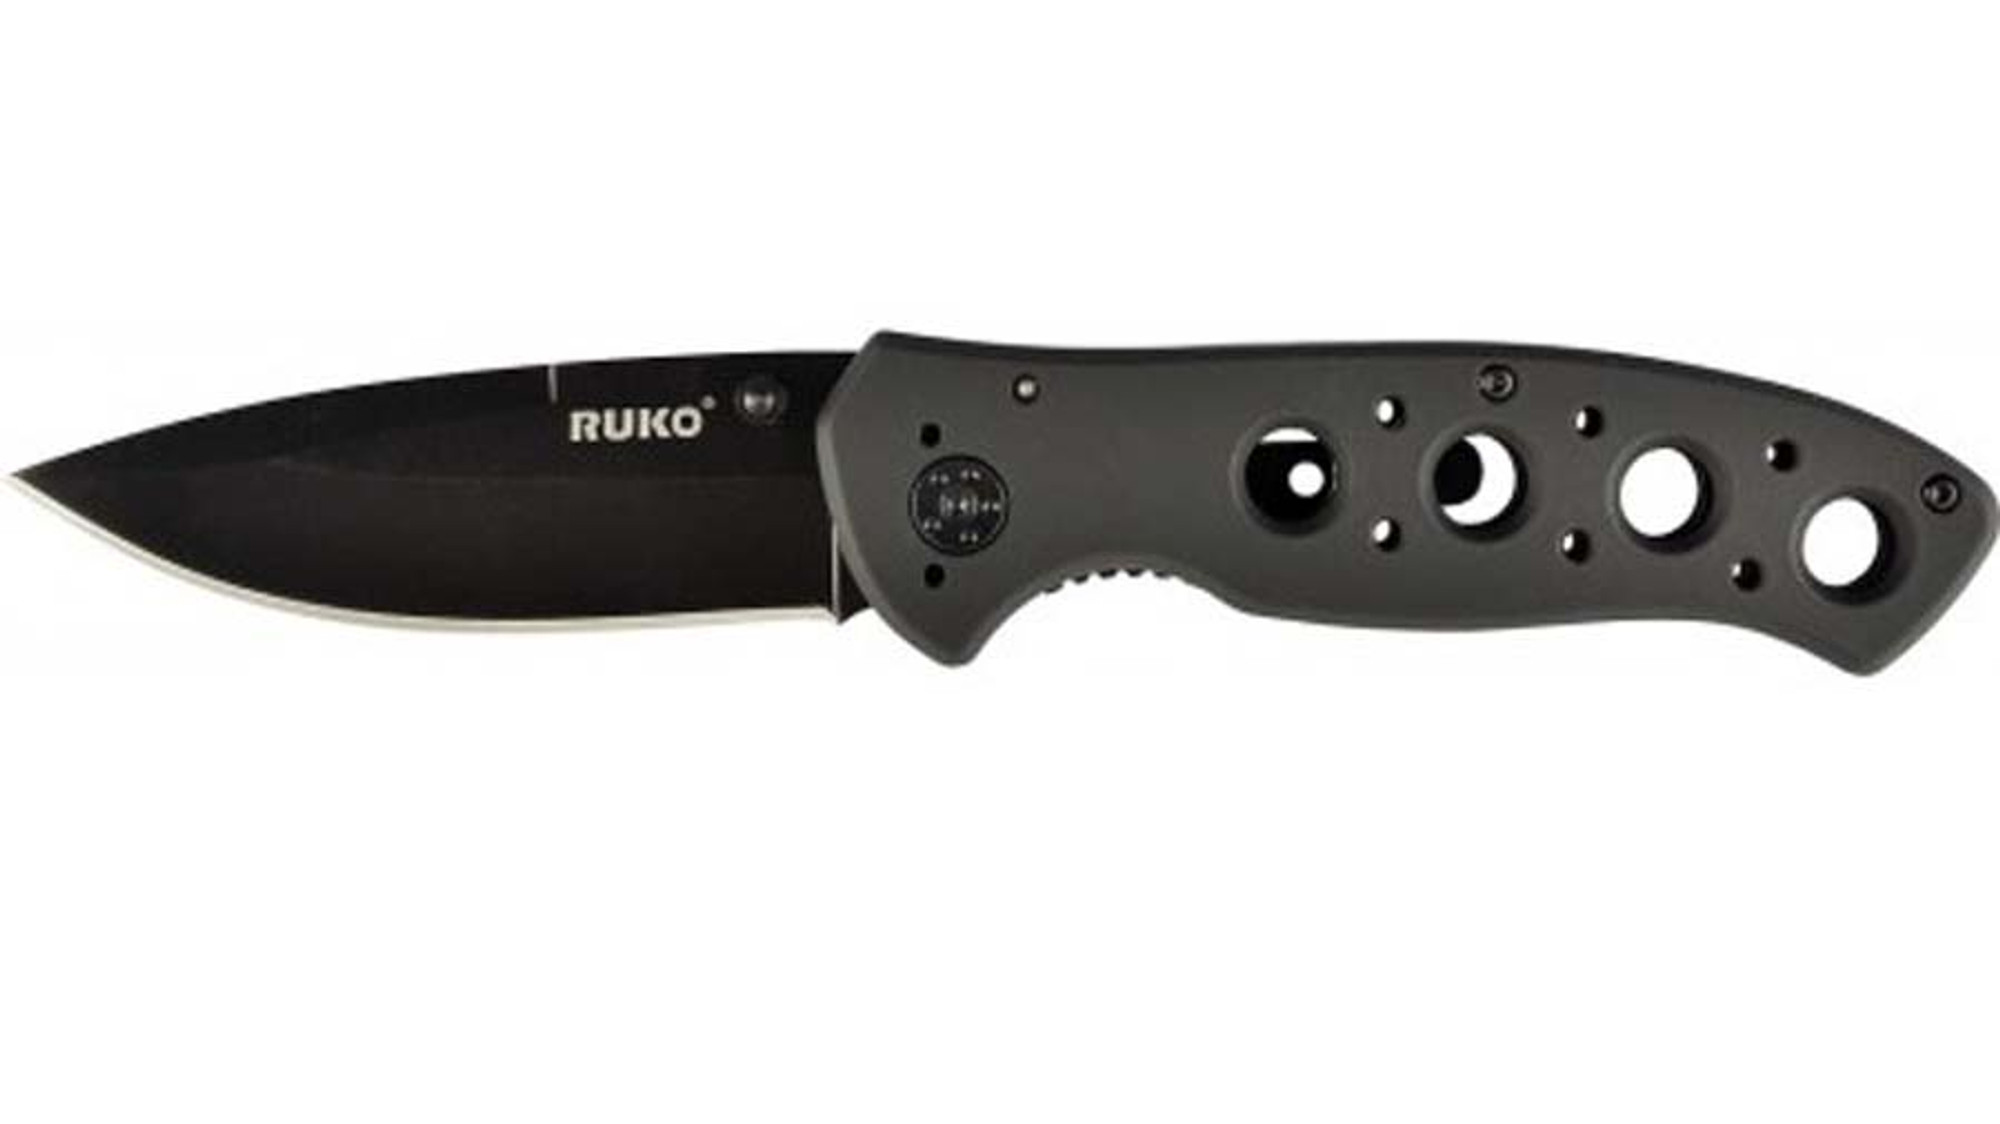 RUKO RUK0075BK, 440A, 3-1/4" Folding Blade Knife, Black Handle, boxed